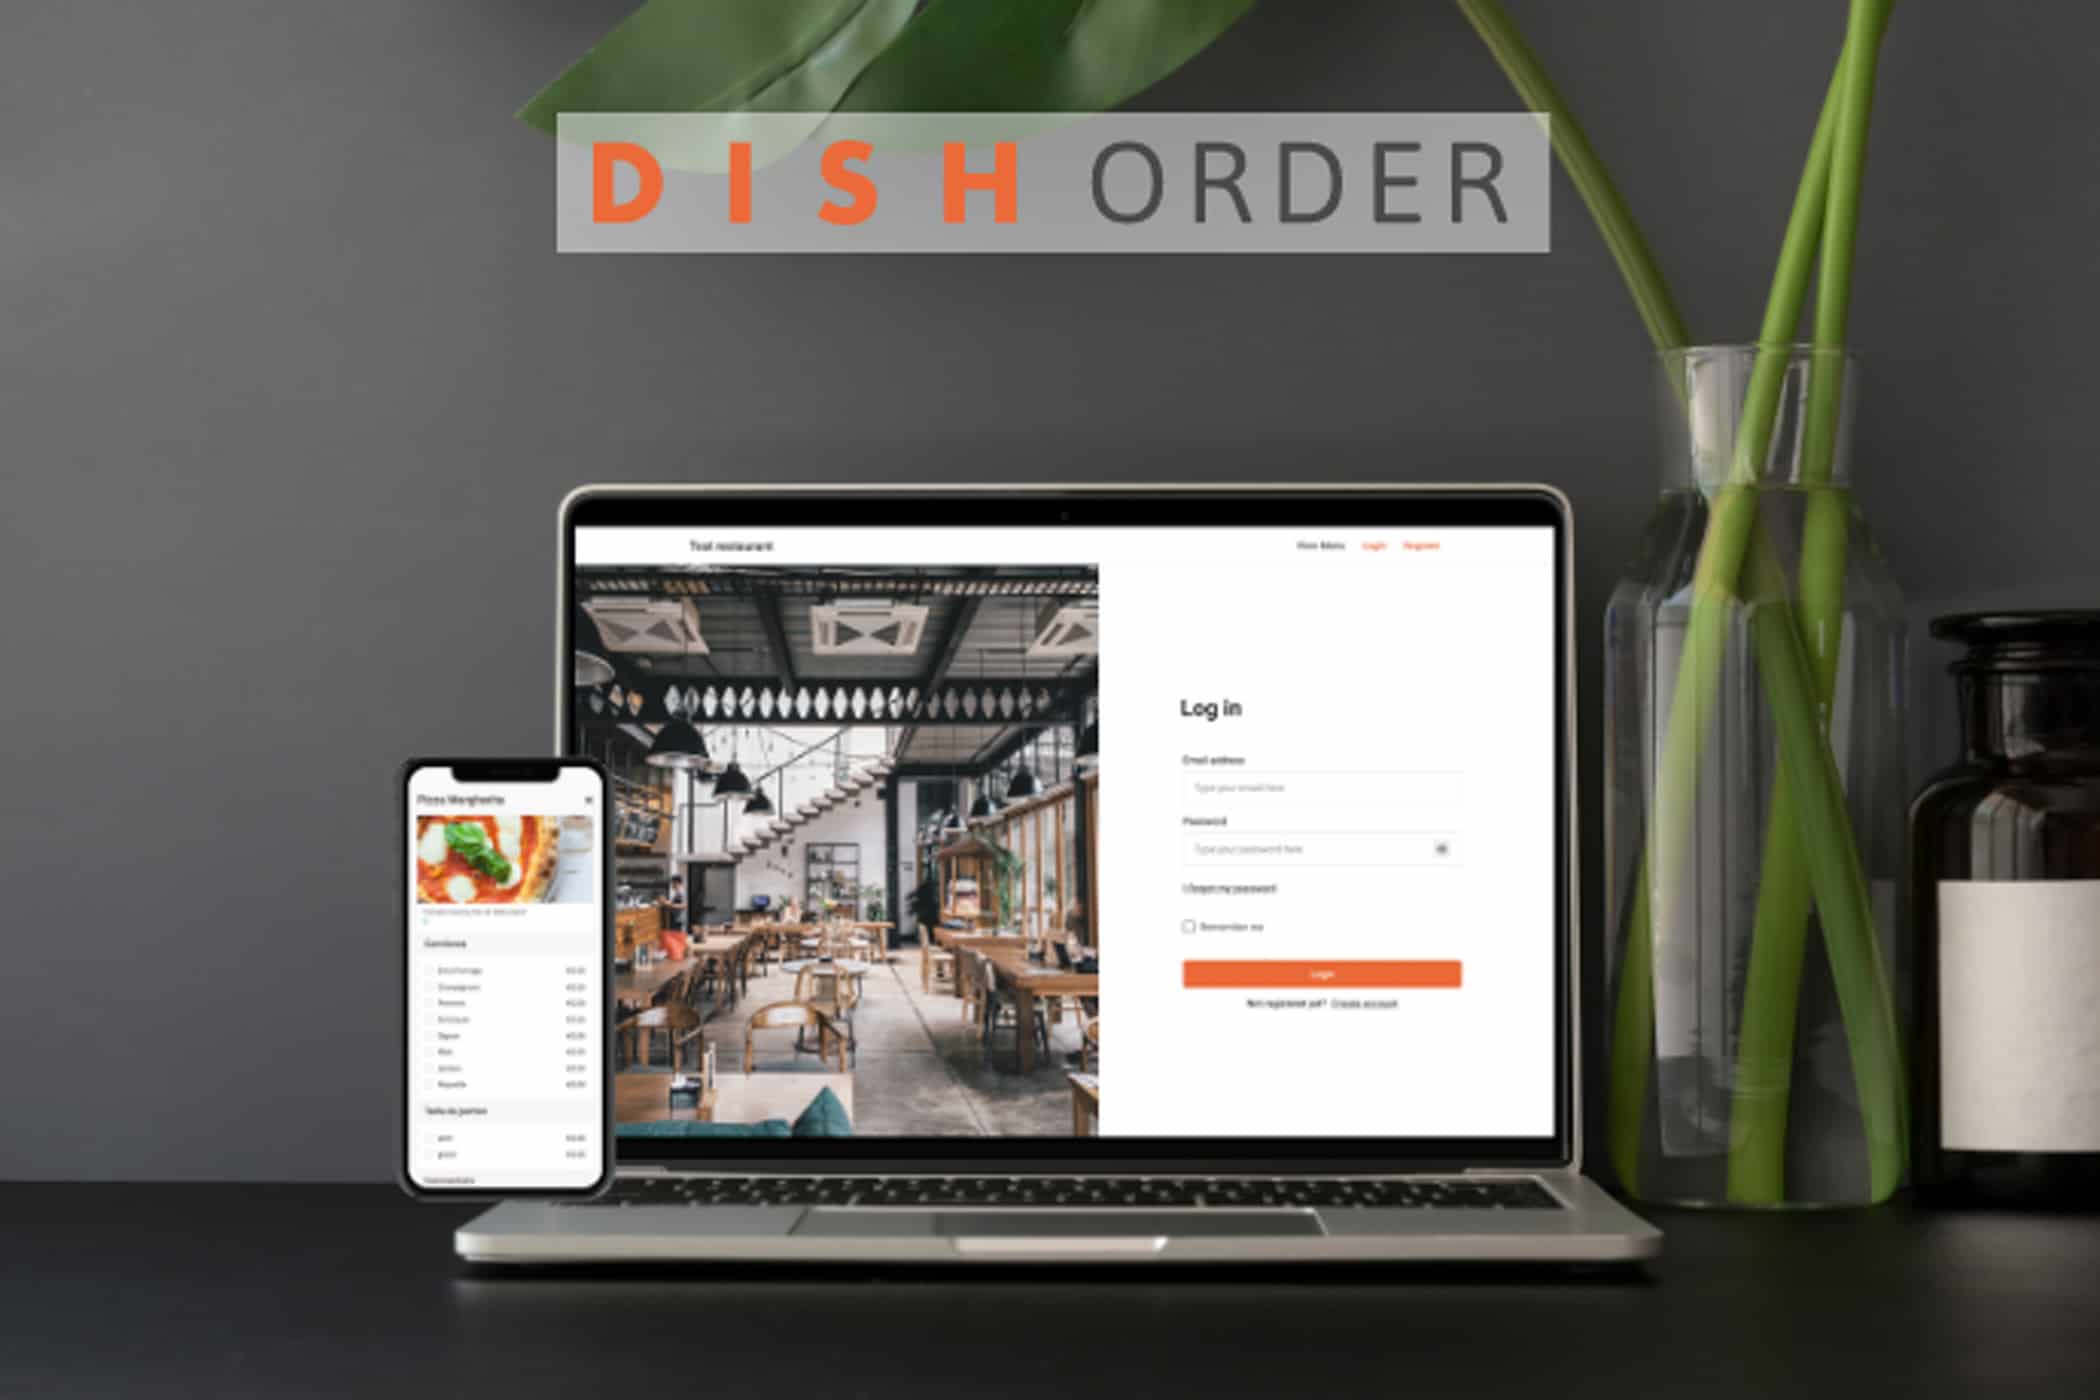 dish order - medien-tools, management, gastronomie Mit einem Klick zum Lieblingsessen: DISH Order hilft Gastronomen digital durch die Krise